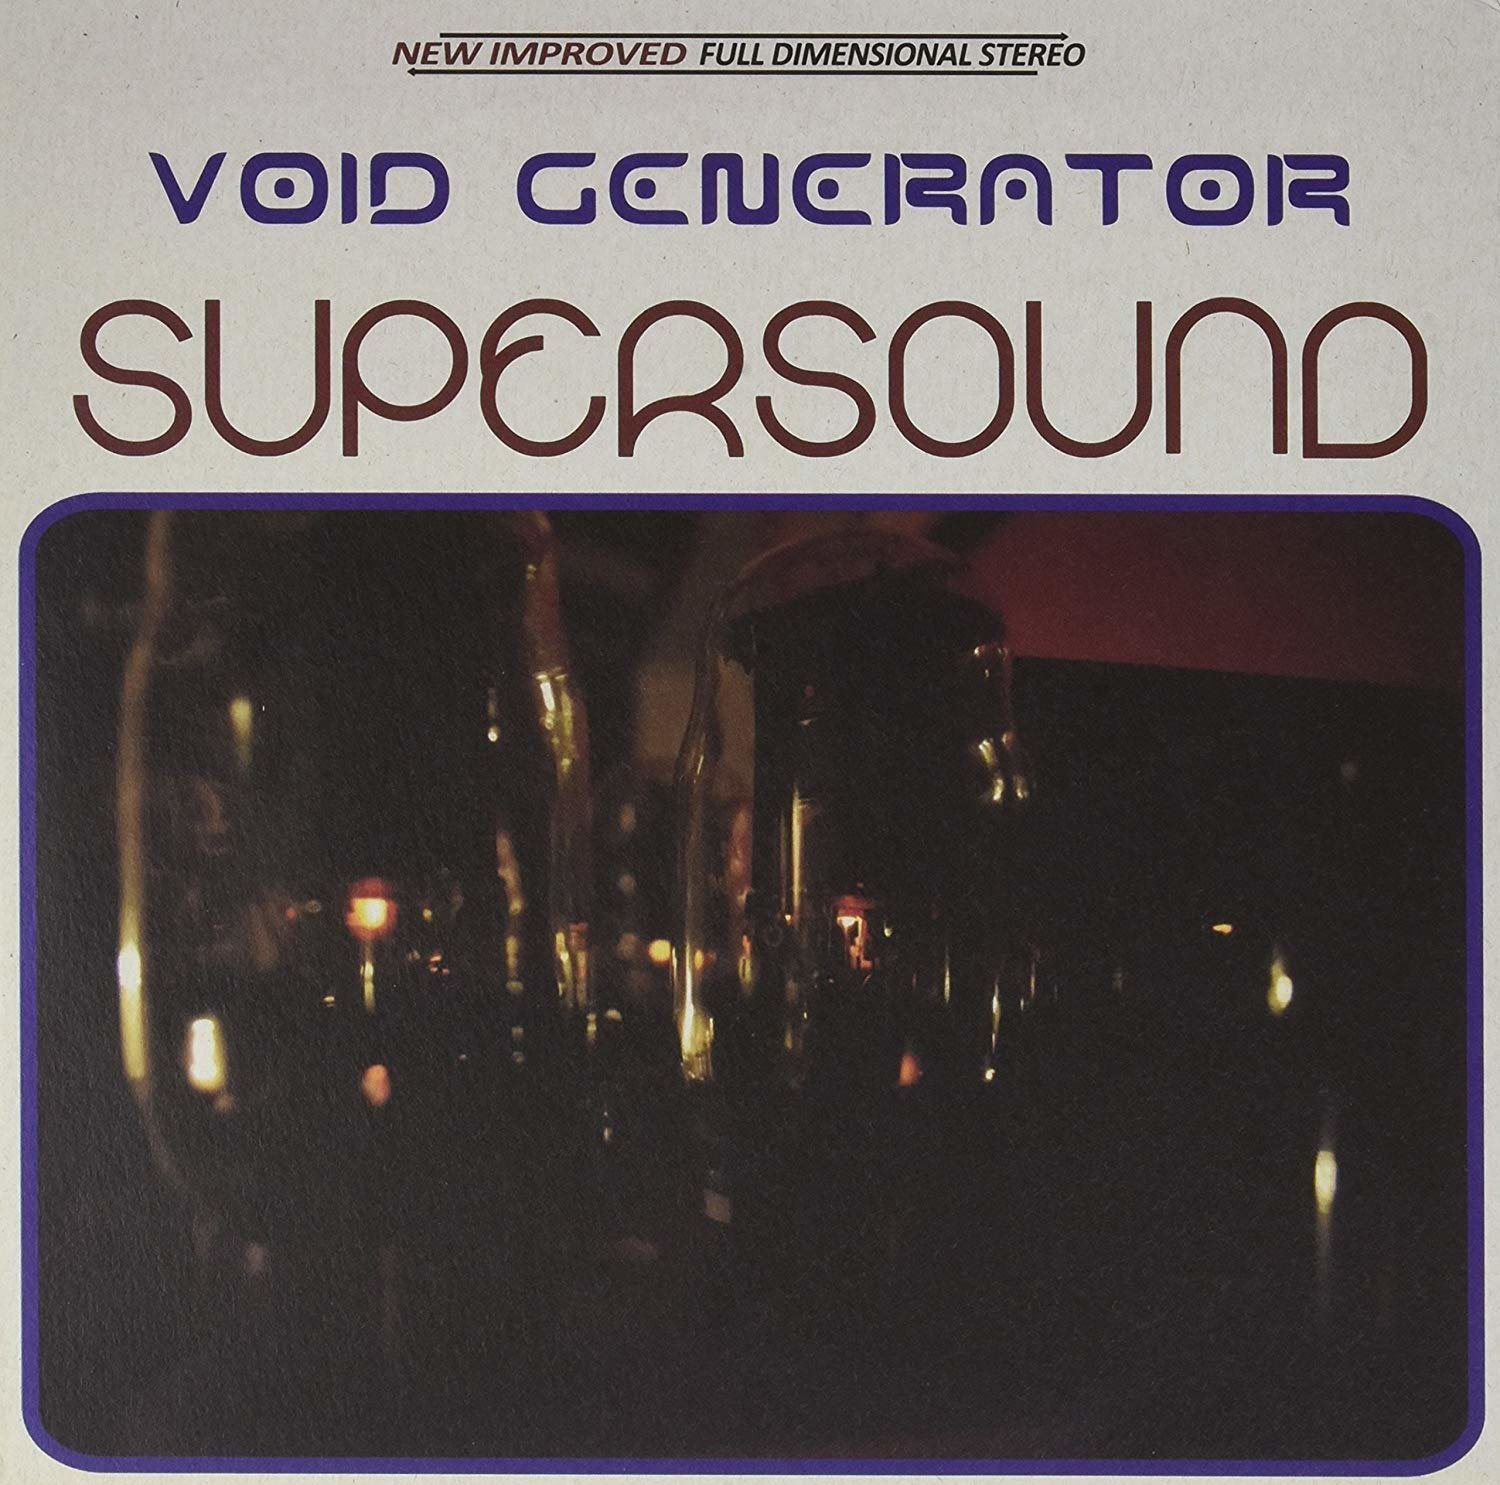 CD Shop - VOID GENERATOR SUPERSOUND